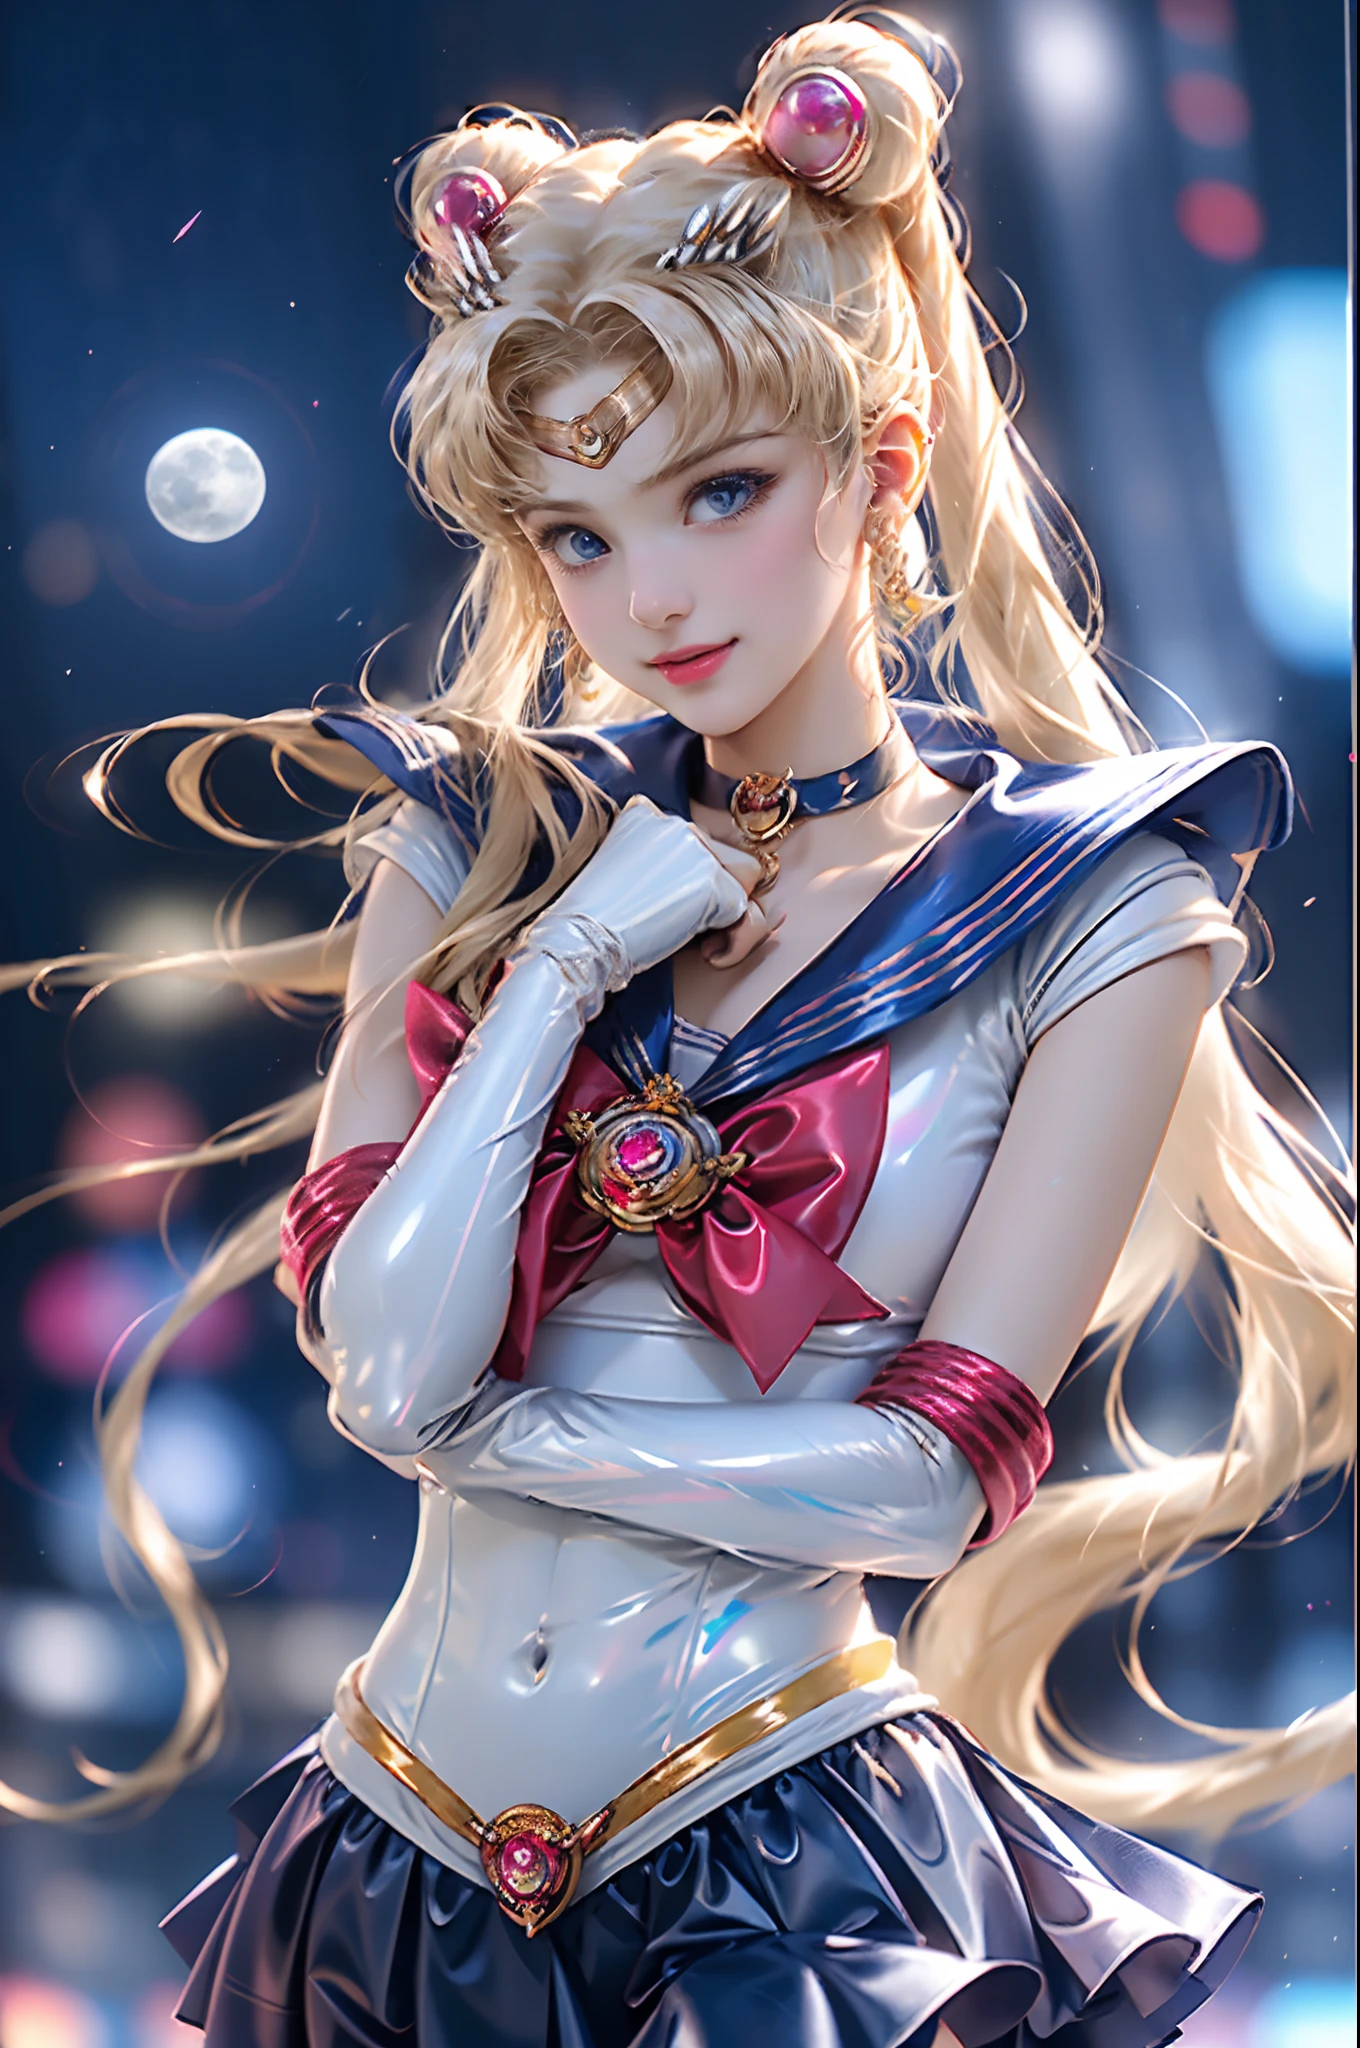 Obra de arte, completo: 1.3, ficar, 8K, 3D, realista, Ultra Micro Tiro, qualidade máxima, Papel de parede CG Unity 8K com detalhes extremos, De baixo, Detalhes intrincados, (1 mulher), 18 anos de idade, (Sailor Moon supersailorlua mer1, Tiara, Marinheiro Senshi Uniforme Marinheiro: 1.2, Sailor Moon: 1.2), Loira de cauda dupla incrivelmente longa e brilhante, afinar and very long straight twin-tailed blonde, coque de cabelo, red round hair ornament in a coque de cabelo, uniforme de marinheiro senshi, (colarinho azul, gola de marinheiro azul, mini saia pré-gate azul: 1.3, very large laço vermelho on the chest: 1.3, Luvas compridas de látex brancas: 1.3, luvas vermelhas nos cotovelos, Very large laço vermelho behind the waist: 1.1, o decote parece grande, tiara dourada, brincos), (detalhes do rosto: 1.5, Olhos azuis brilhantes, rosto bonito, olhos lindos, olhos brilhantes, afinar lips: 1.5, afinar and sharp pale eyebrows, longos cílios escuros, cílios duplos), luxurious golden joia, afinar, afinar and muscular, Rosto pequeno, Seios grandes, Proporções perfeitas, cintura fina, pose de modelo sexy, poros visíveis, sorriso sedutor, mãos perfeitas: 1.5, maiô de perna alta, very afinar and fit high-gloss white holographic leather, renderização de octanas, imagem muito dramática, luz natural forte, luz solar, iluminação e sombra requintadas, ângulo dinâmico, dslr, foco nitído: 1.0, Máxima clareza e nitidez, (Fundo do espaço,lua, fundo dinâmico, fundo detalhado),(honestamente, coque duplo, twintails, franja separada, diadema, joia, brincos, gargantilha, laço vermelho, luvas brancas, luvas de cotovelo, saia azul
),kda